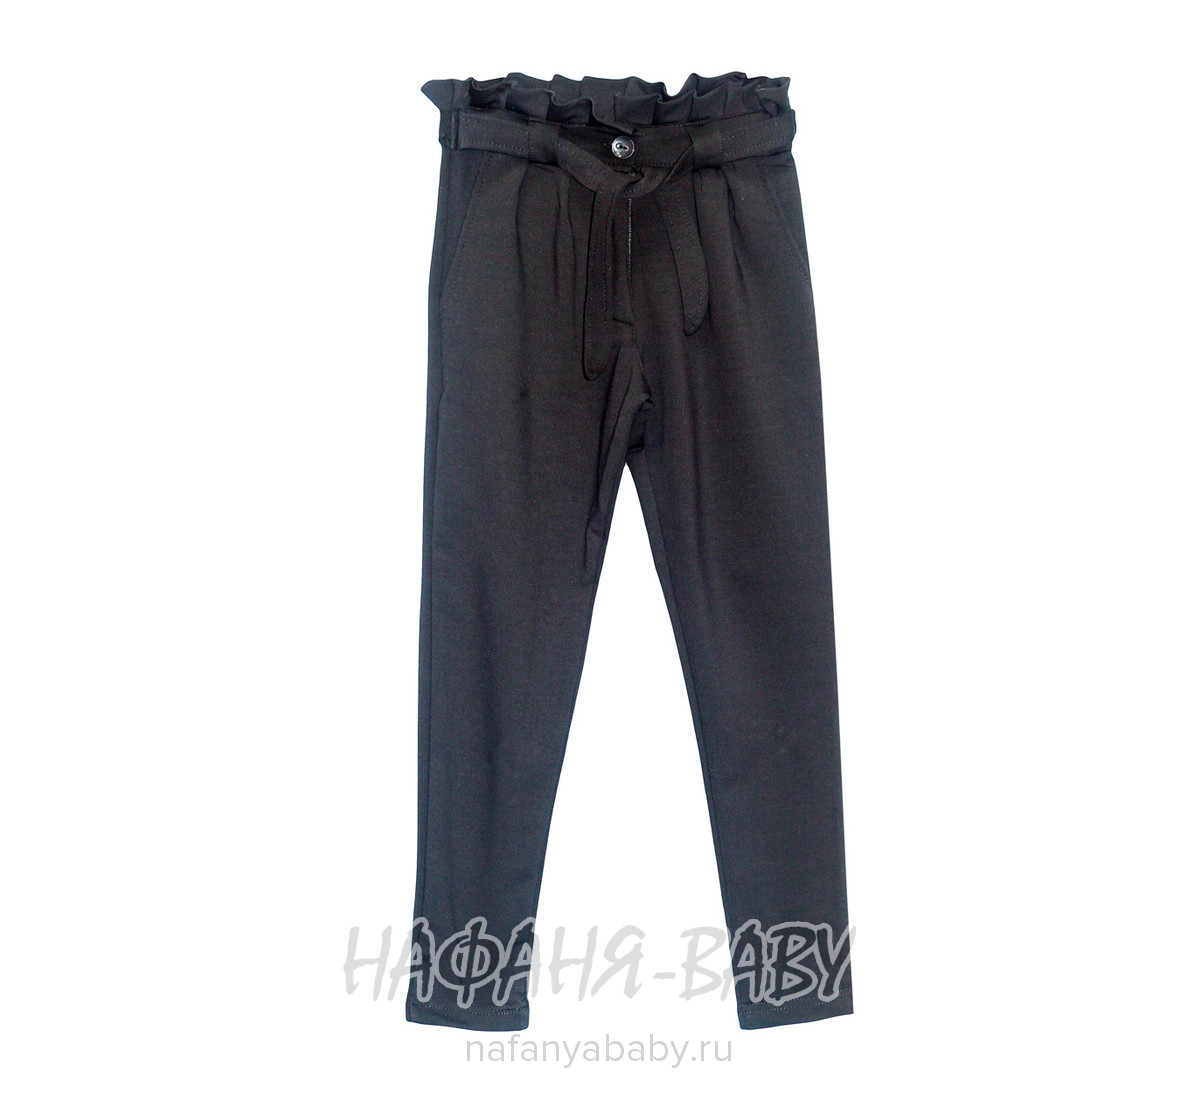 Модные трикотажные брюки для девочки ATC арт: 1685, 10-15 лет, 5-9 лет, оптом Турция